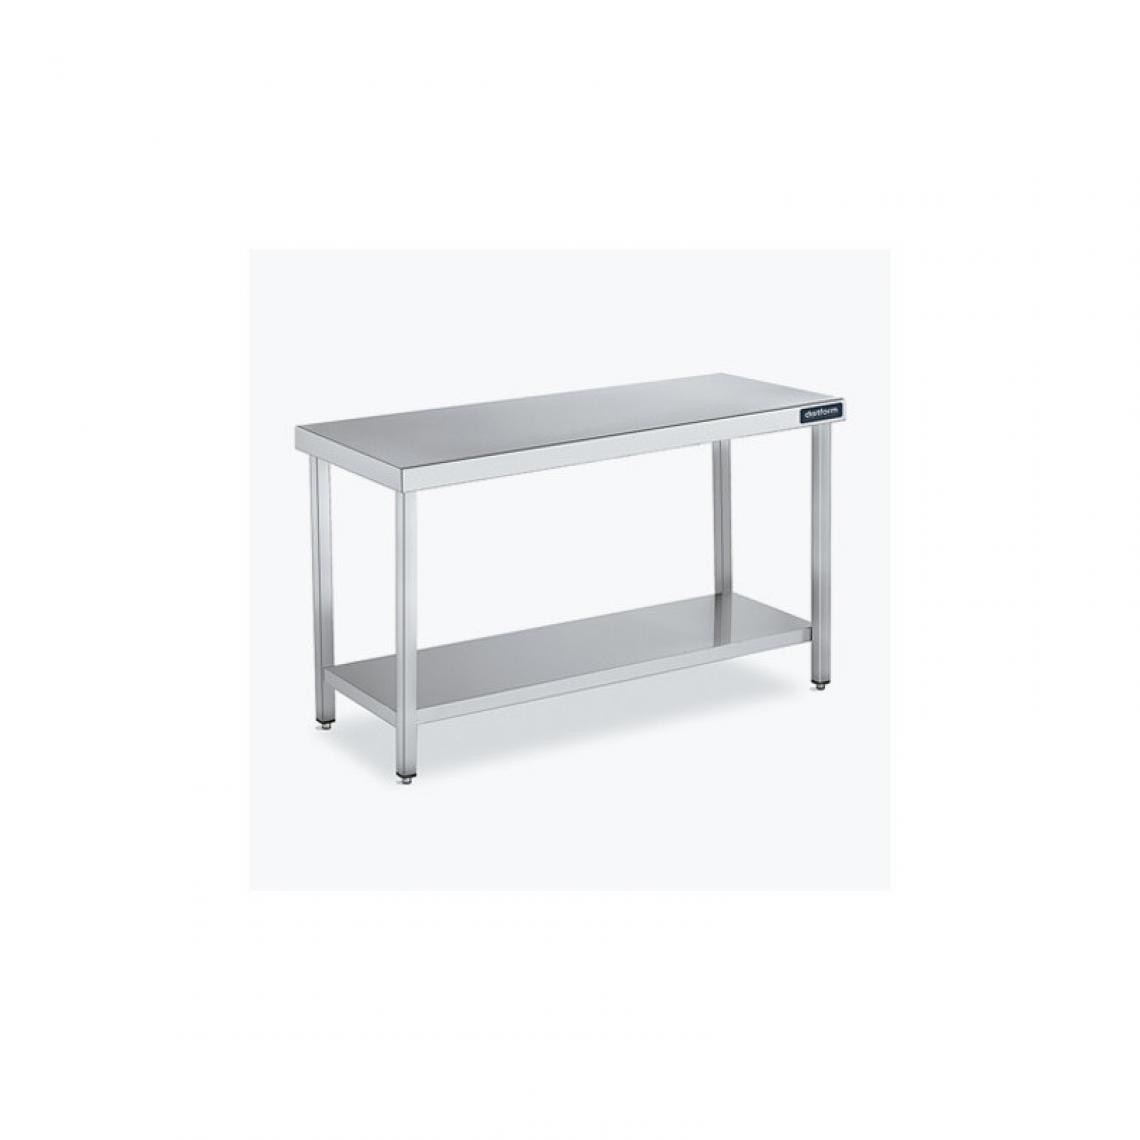 DISTFORM - Table Central 600x550 avec Étagère - Distform - Inox 18/101600x550x850mm - Tables à manger